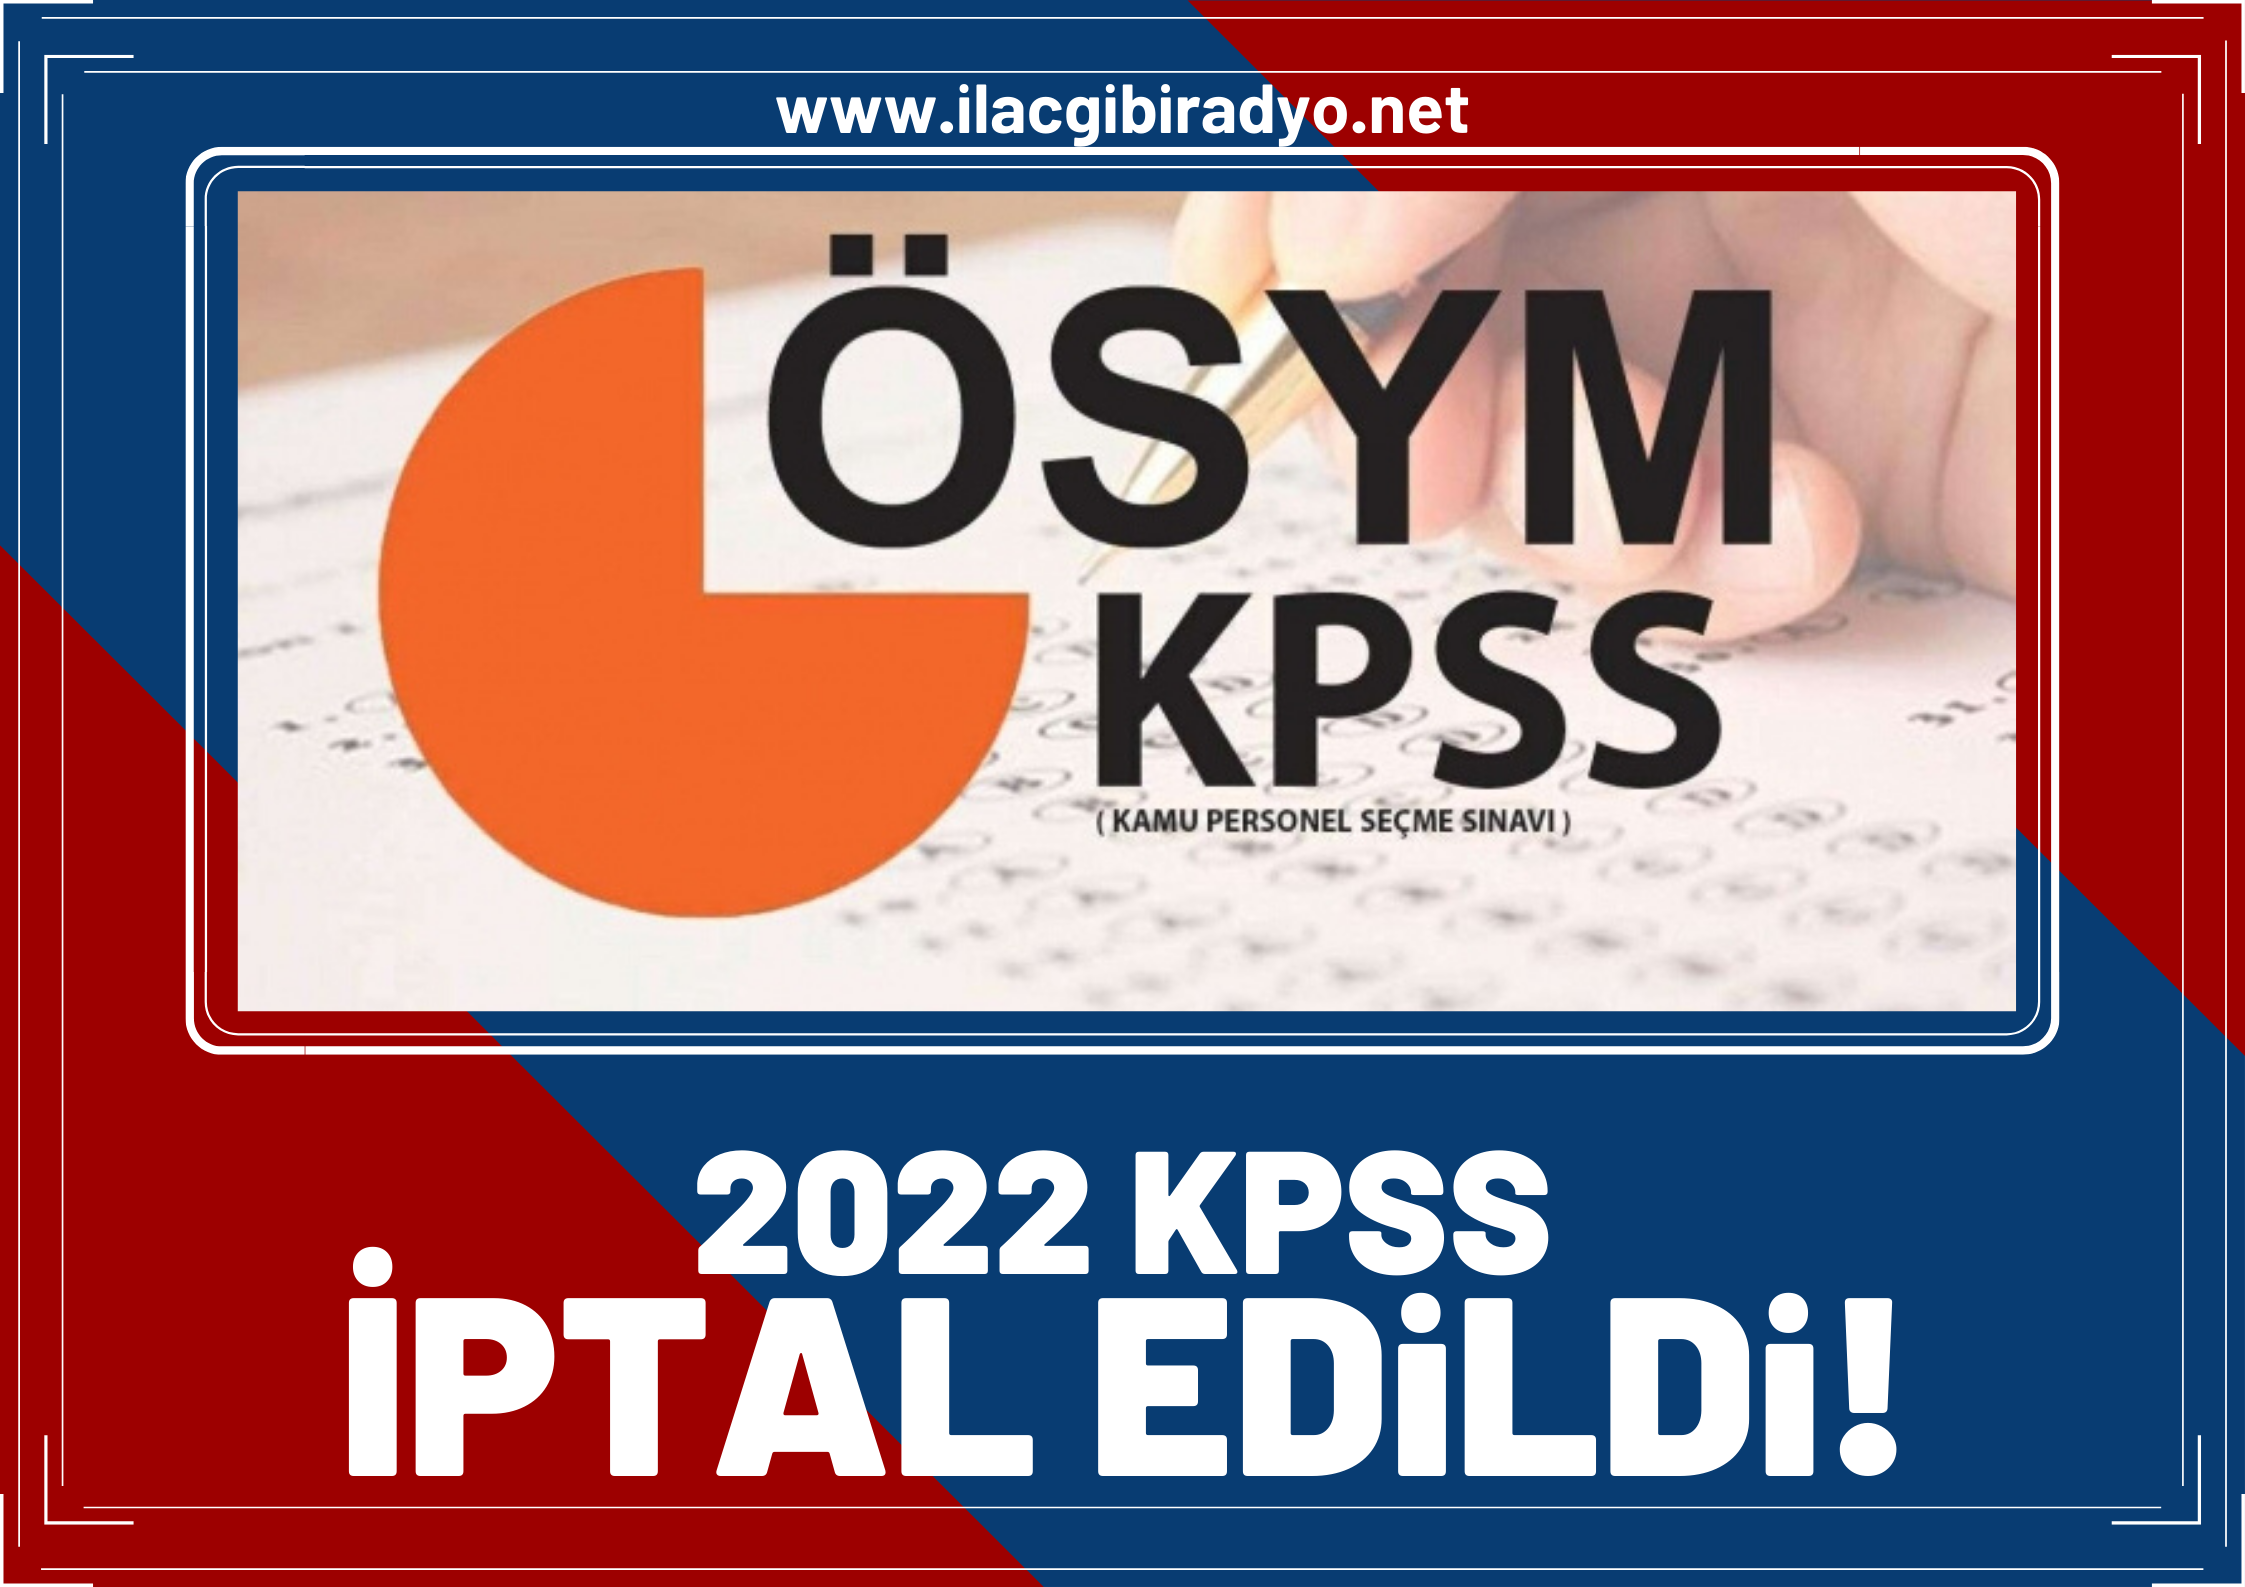 2022 KPSS iptal edildi! ÖSYM resmi açıklamayı yaptı!